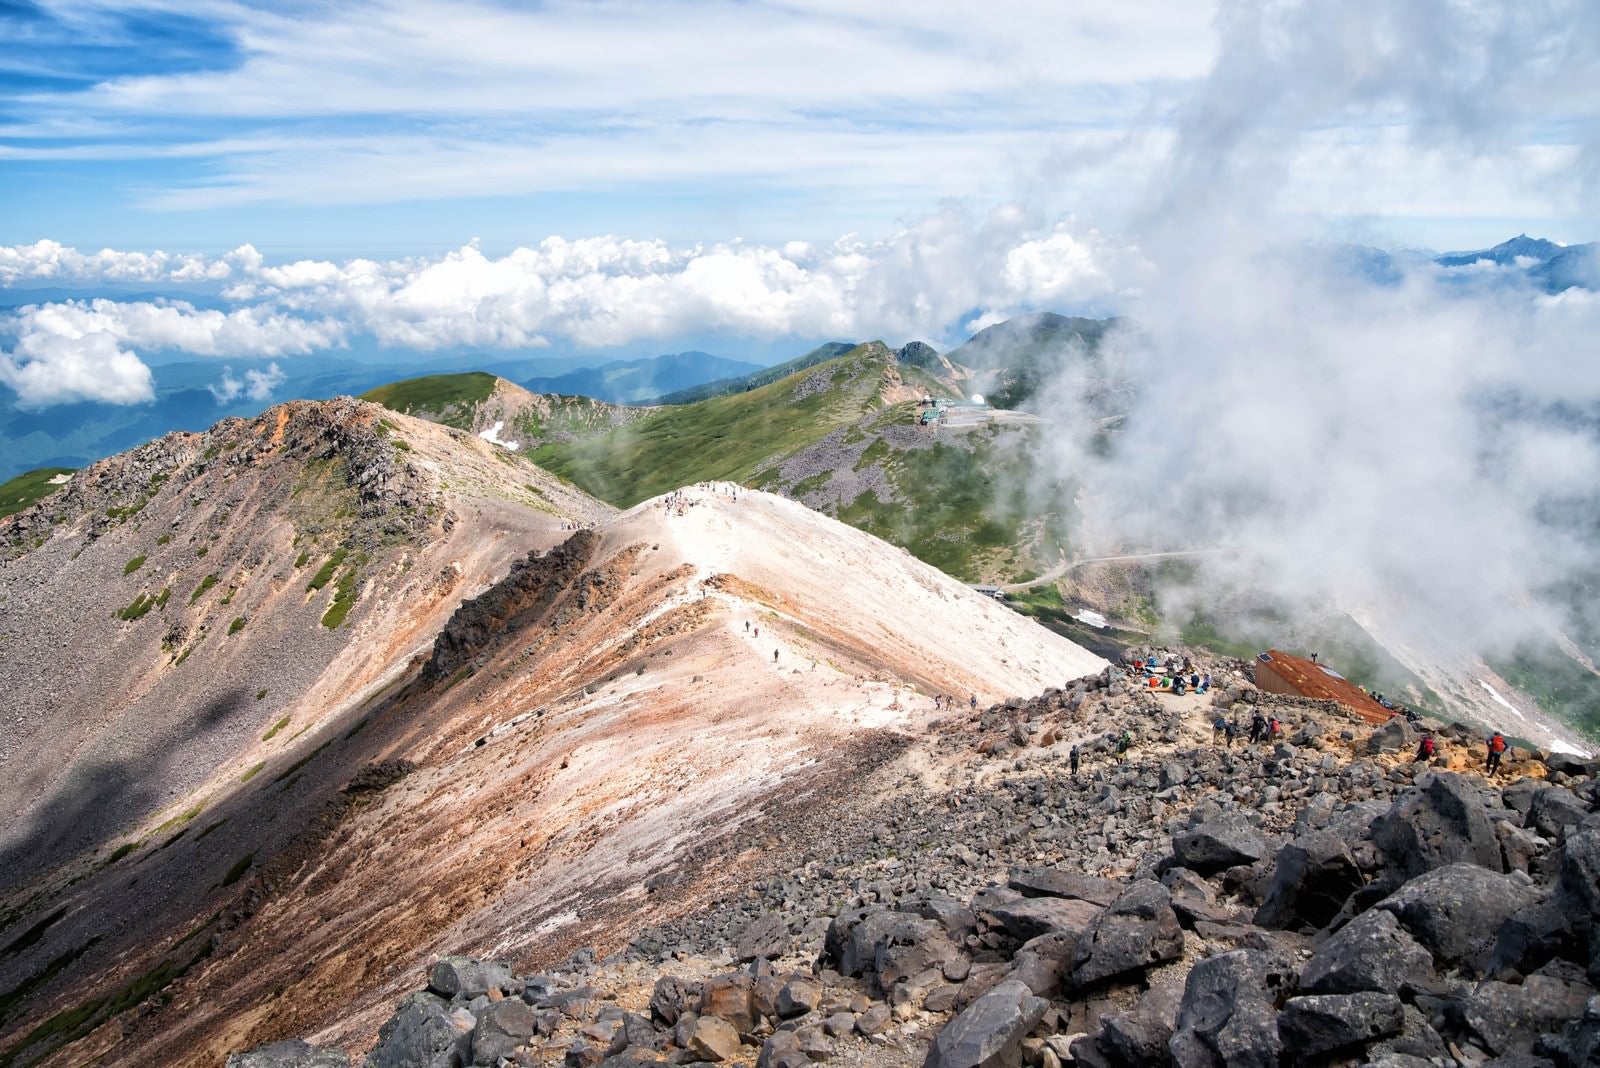 「乗鞍剣ヶ峰への登山道から見える風景」の写真